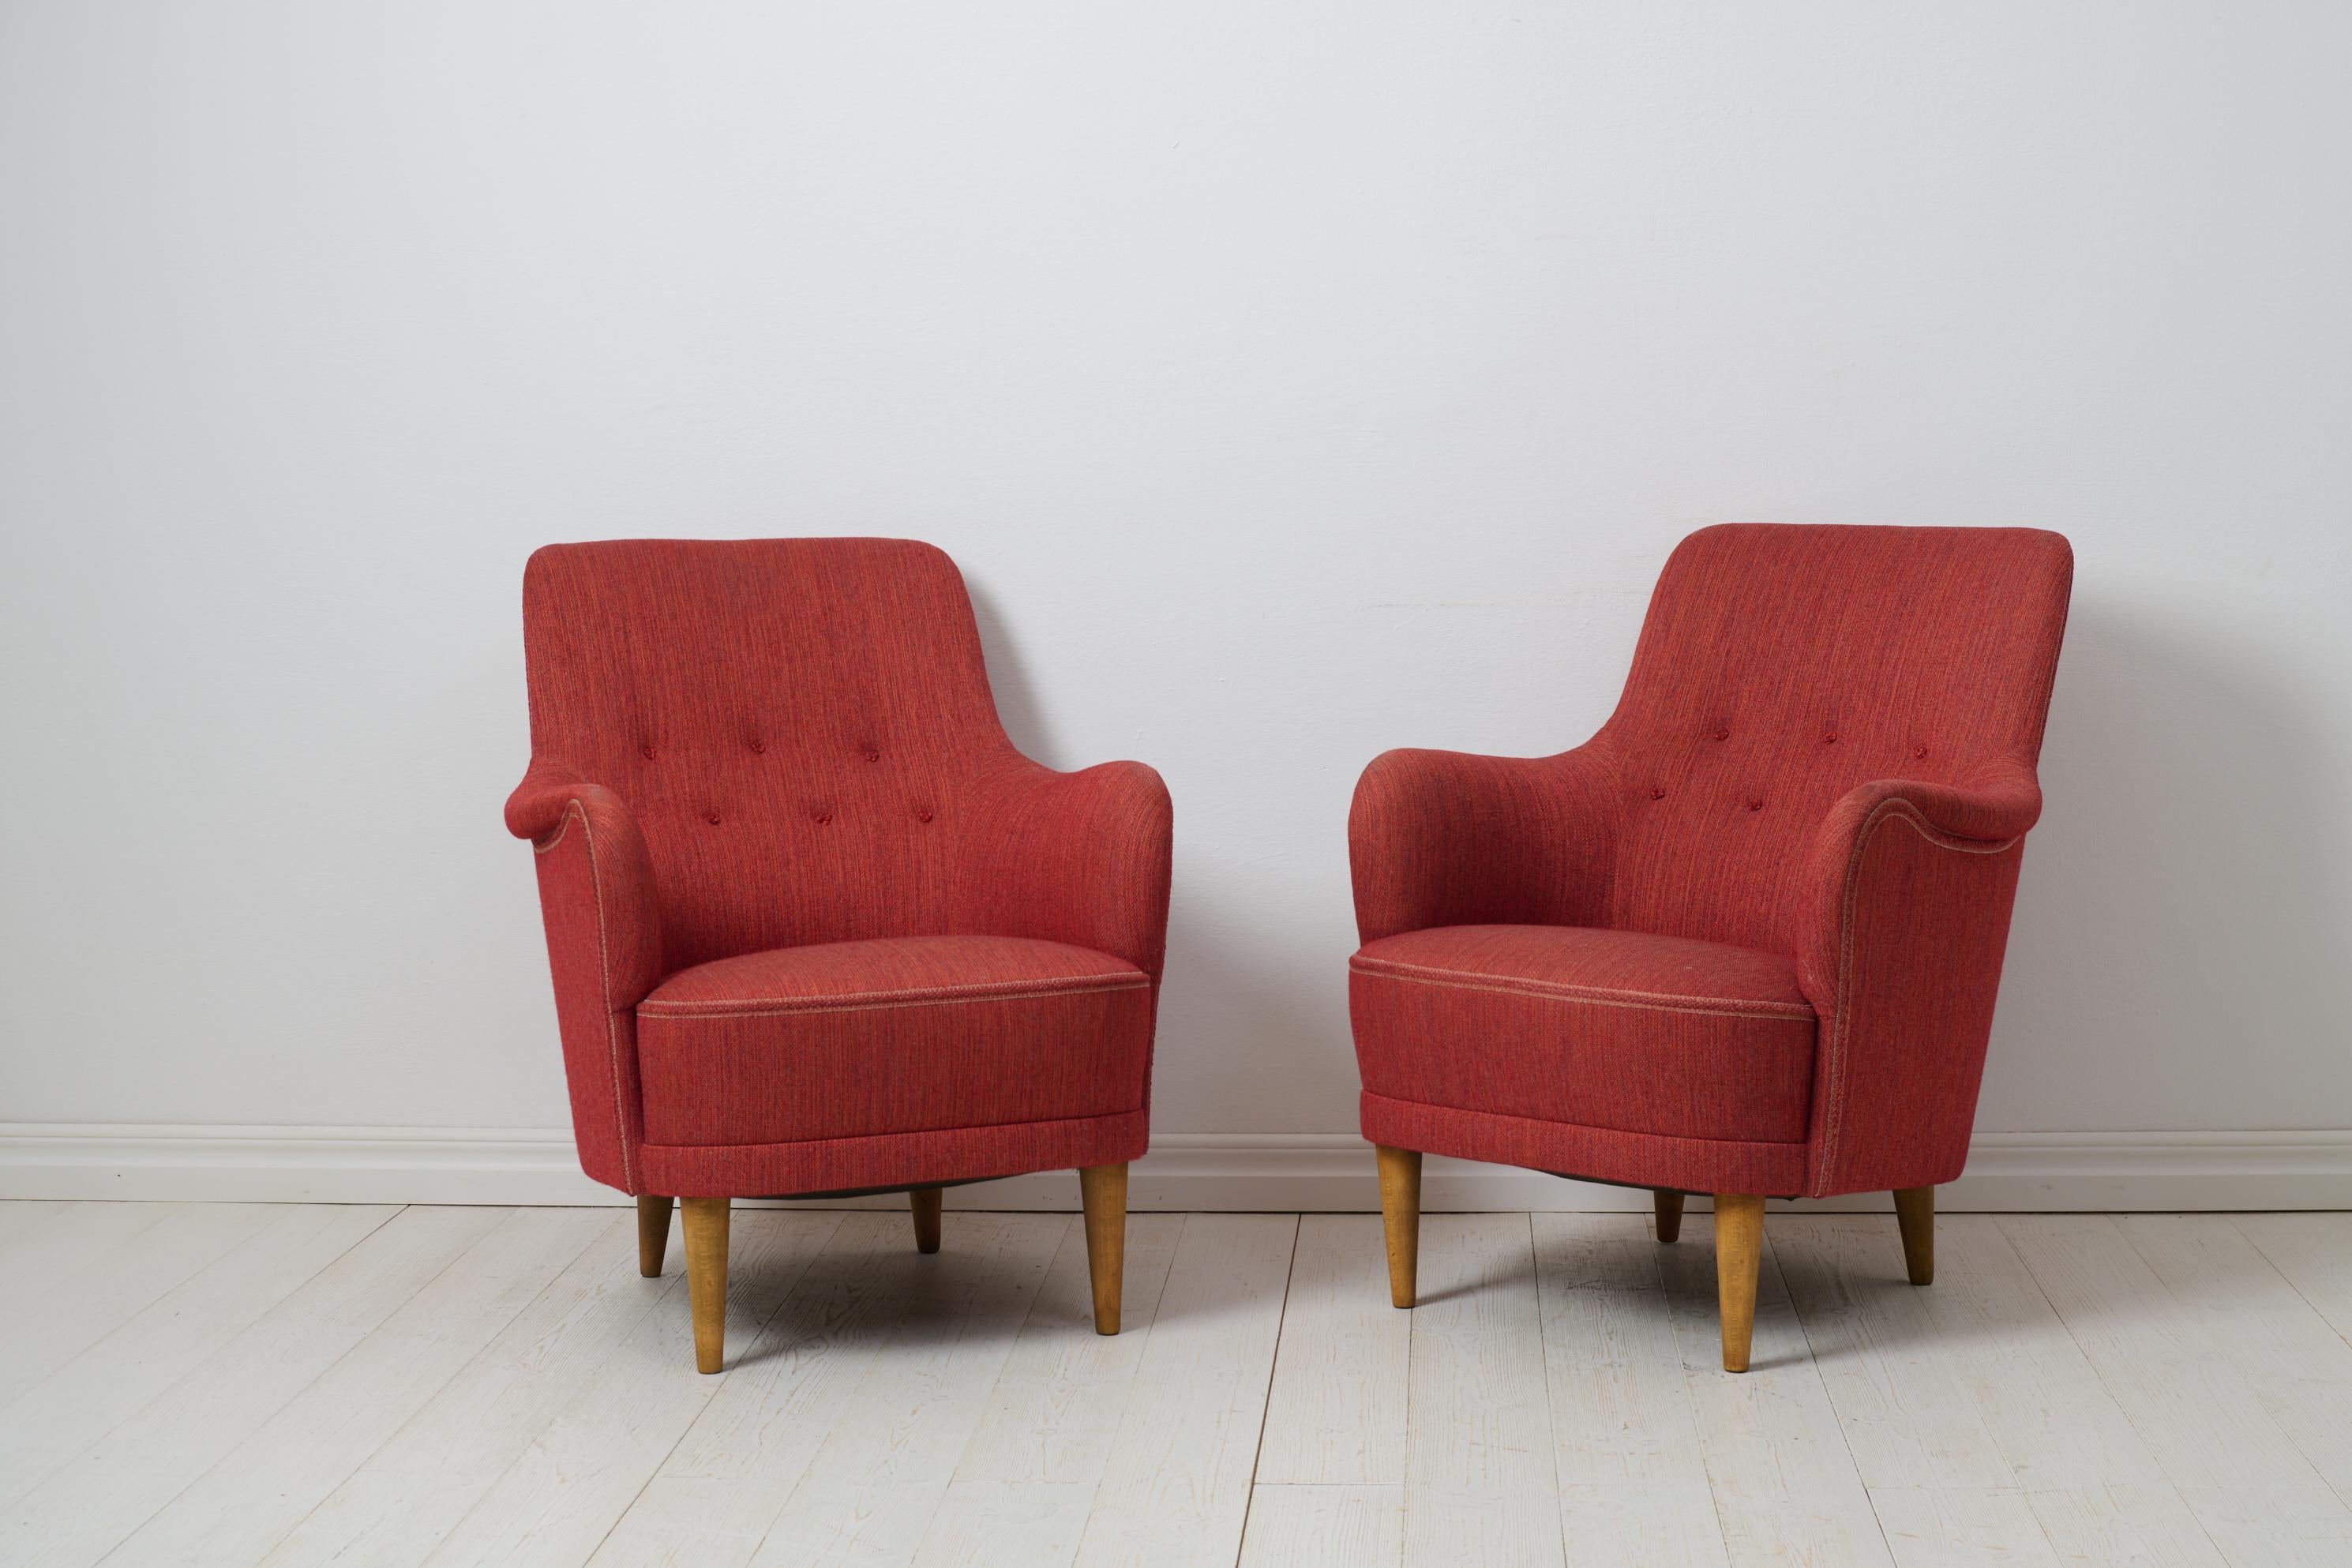 Fauteuils Samsas de Carl Malmsten pour O.H. Sjögren au milieu du 20e siècle. Ces chaises sont un classique de la modernité suédoise et la série Design/One est aujourd'hui reconnue comme la plus caractéristique des créations de Malmsten. Le fauteuil